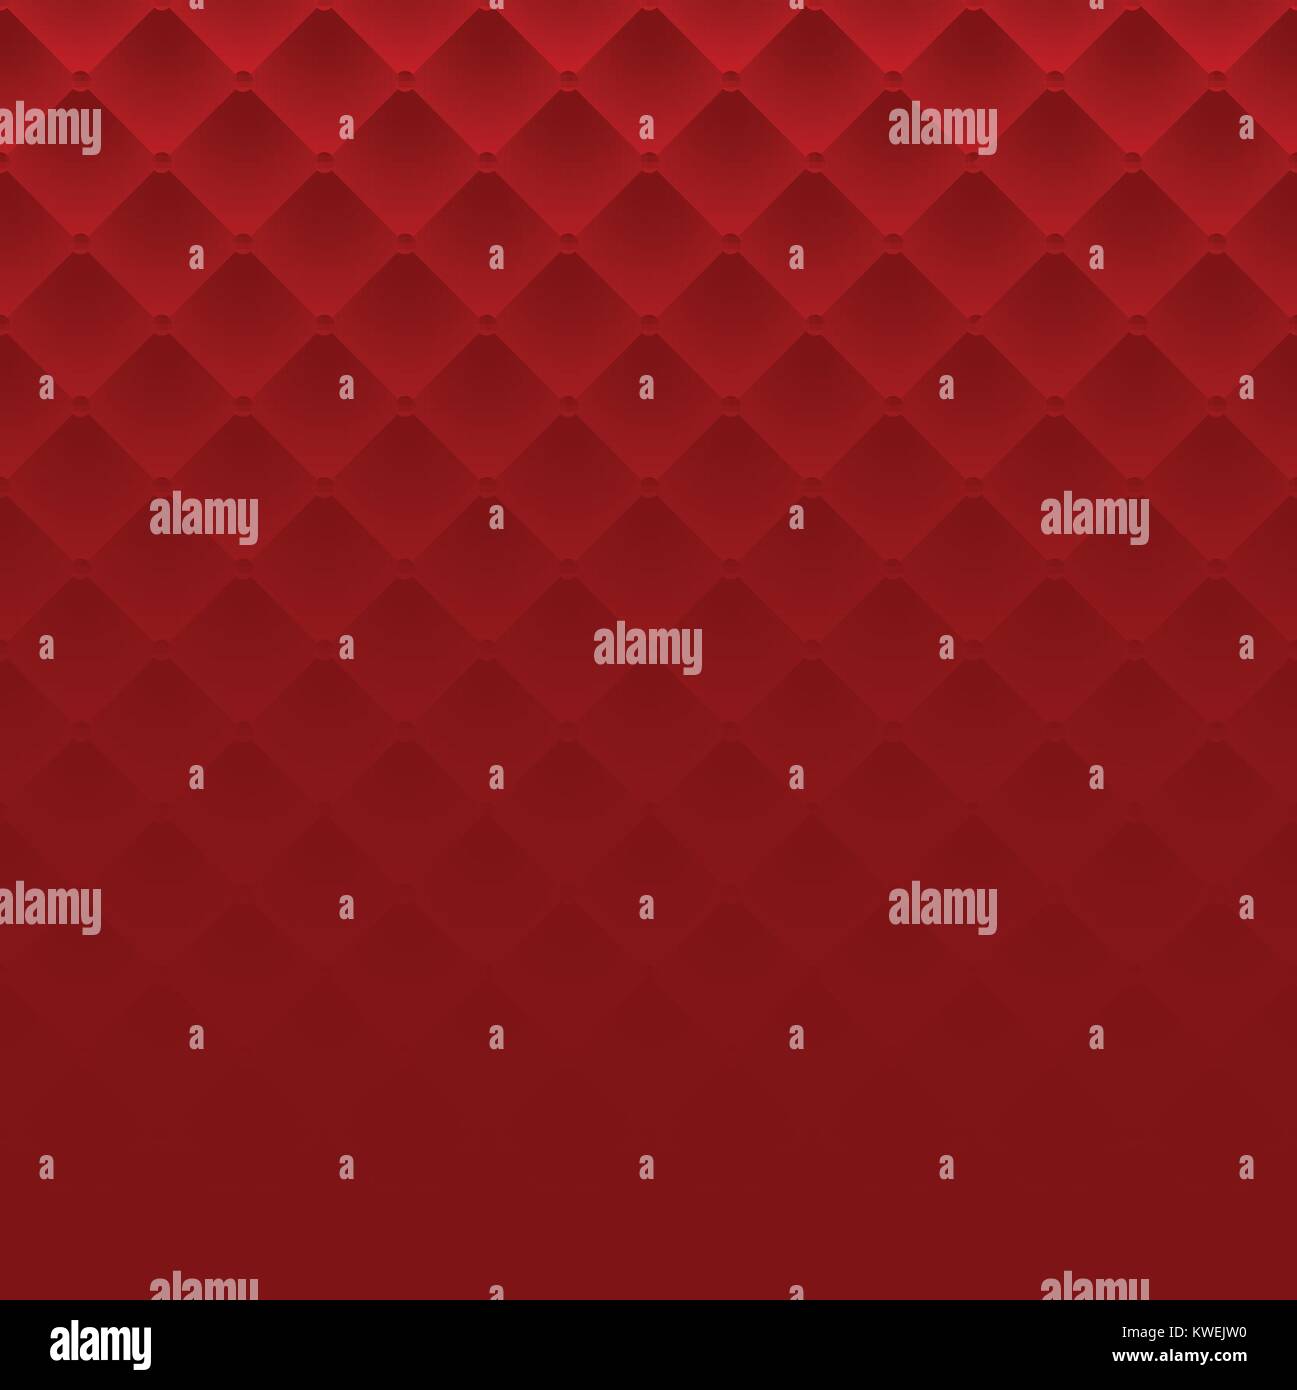 Der Rote Platz luxus Muster sofa Textur Hintergrund Vektor Stock Vektor